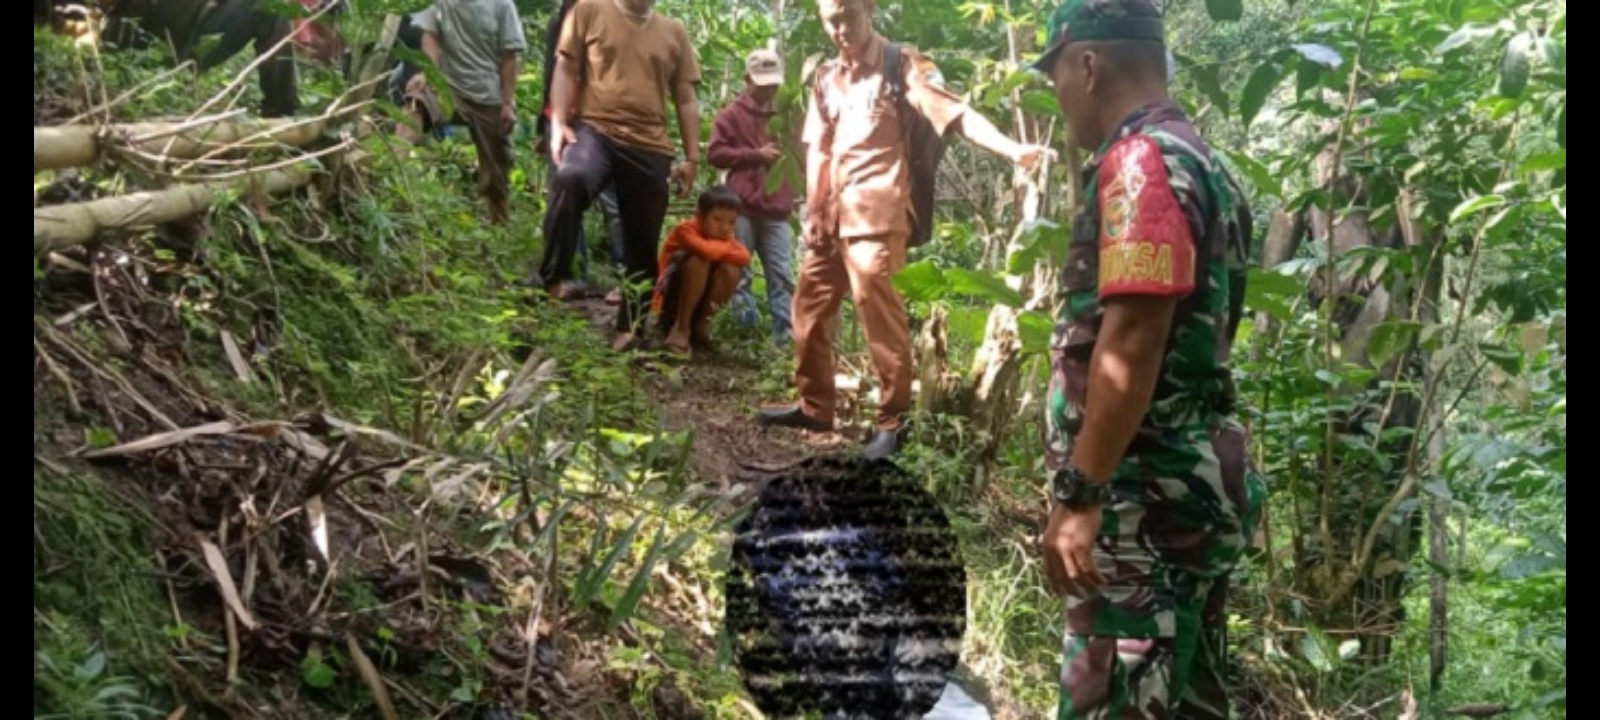 Heboh, Warga Ujan Mas Ditemukan Tewas di Perkebunan Desa Batu Bandung